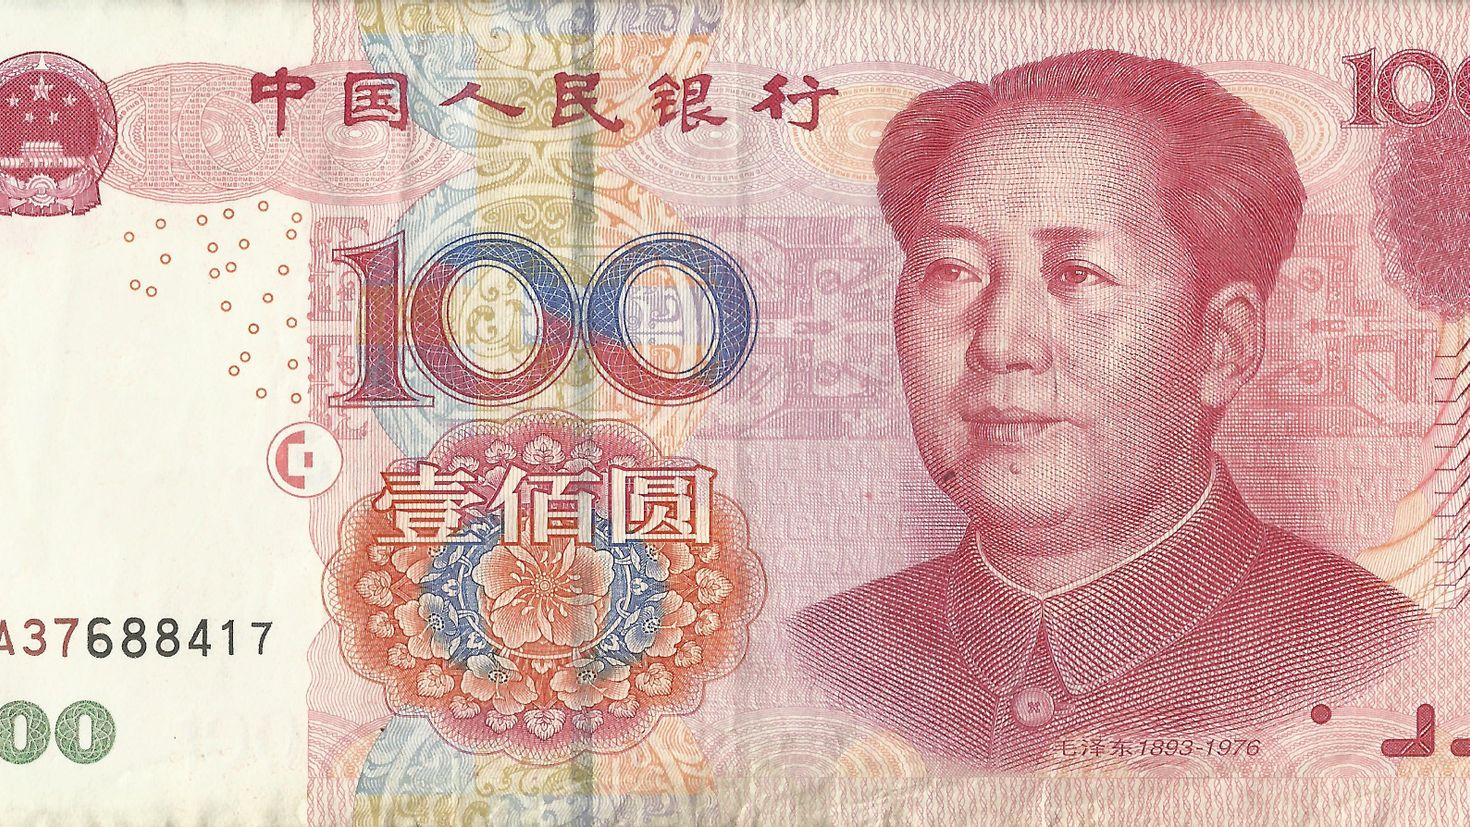 Китай денежная единица. Банкнота 100 юаней. 100 Юаней купюра. СТО юаней купюра. Изображение на китайских деньгах.